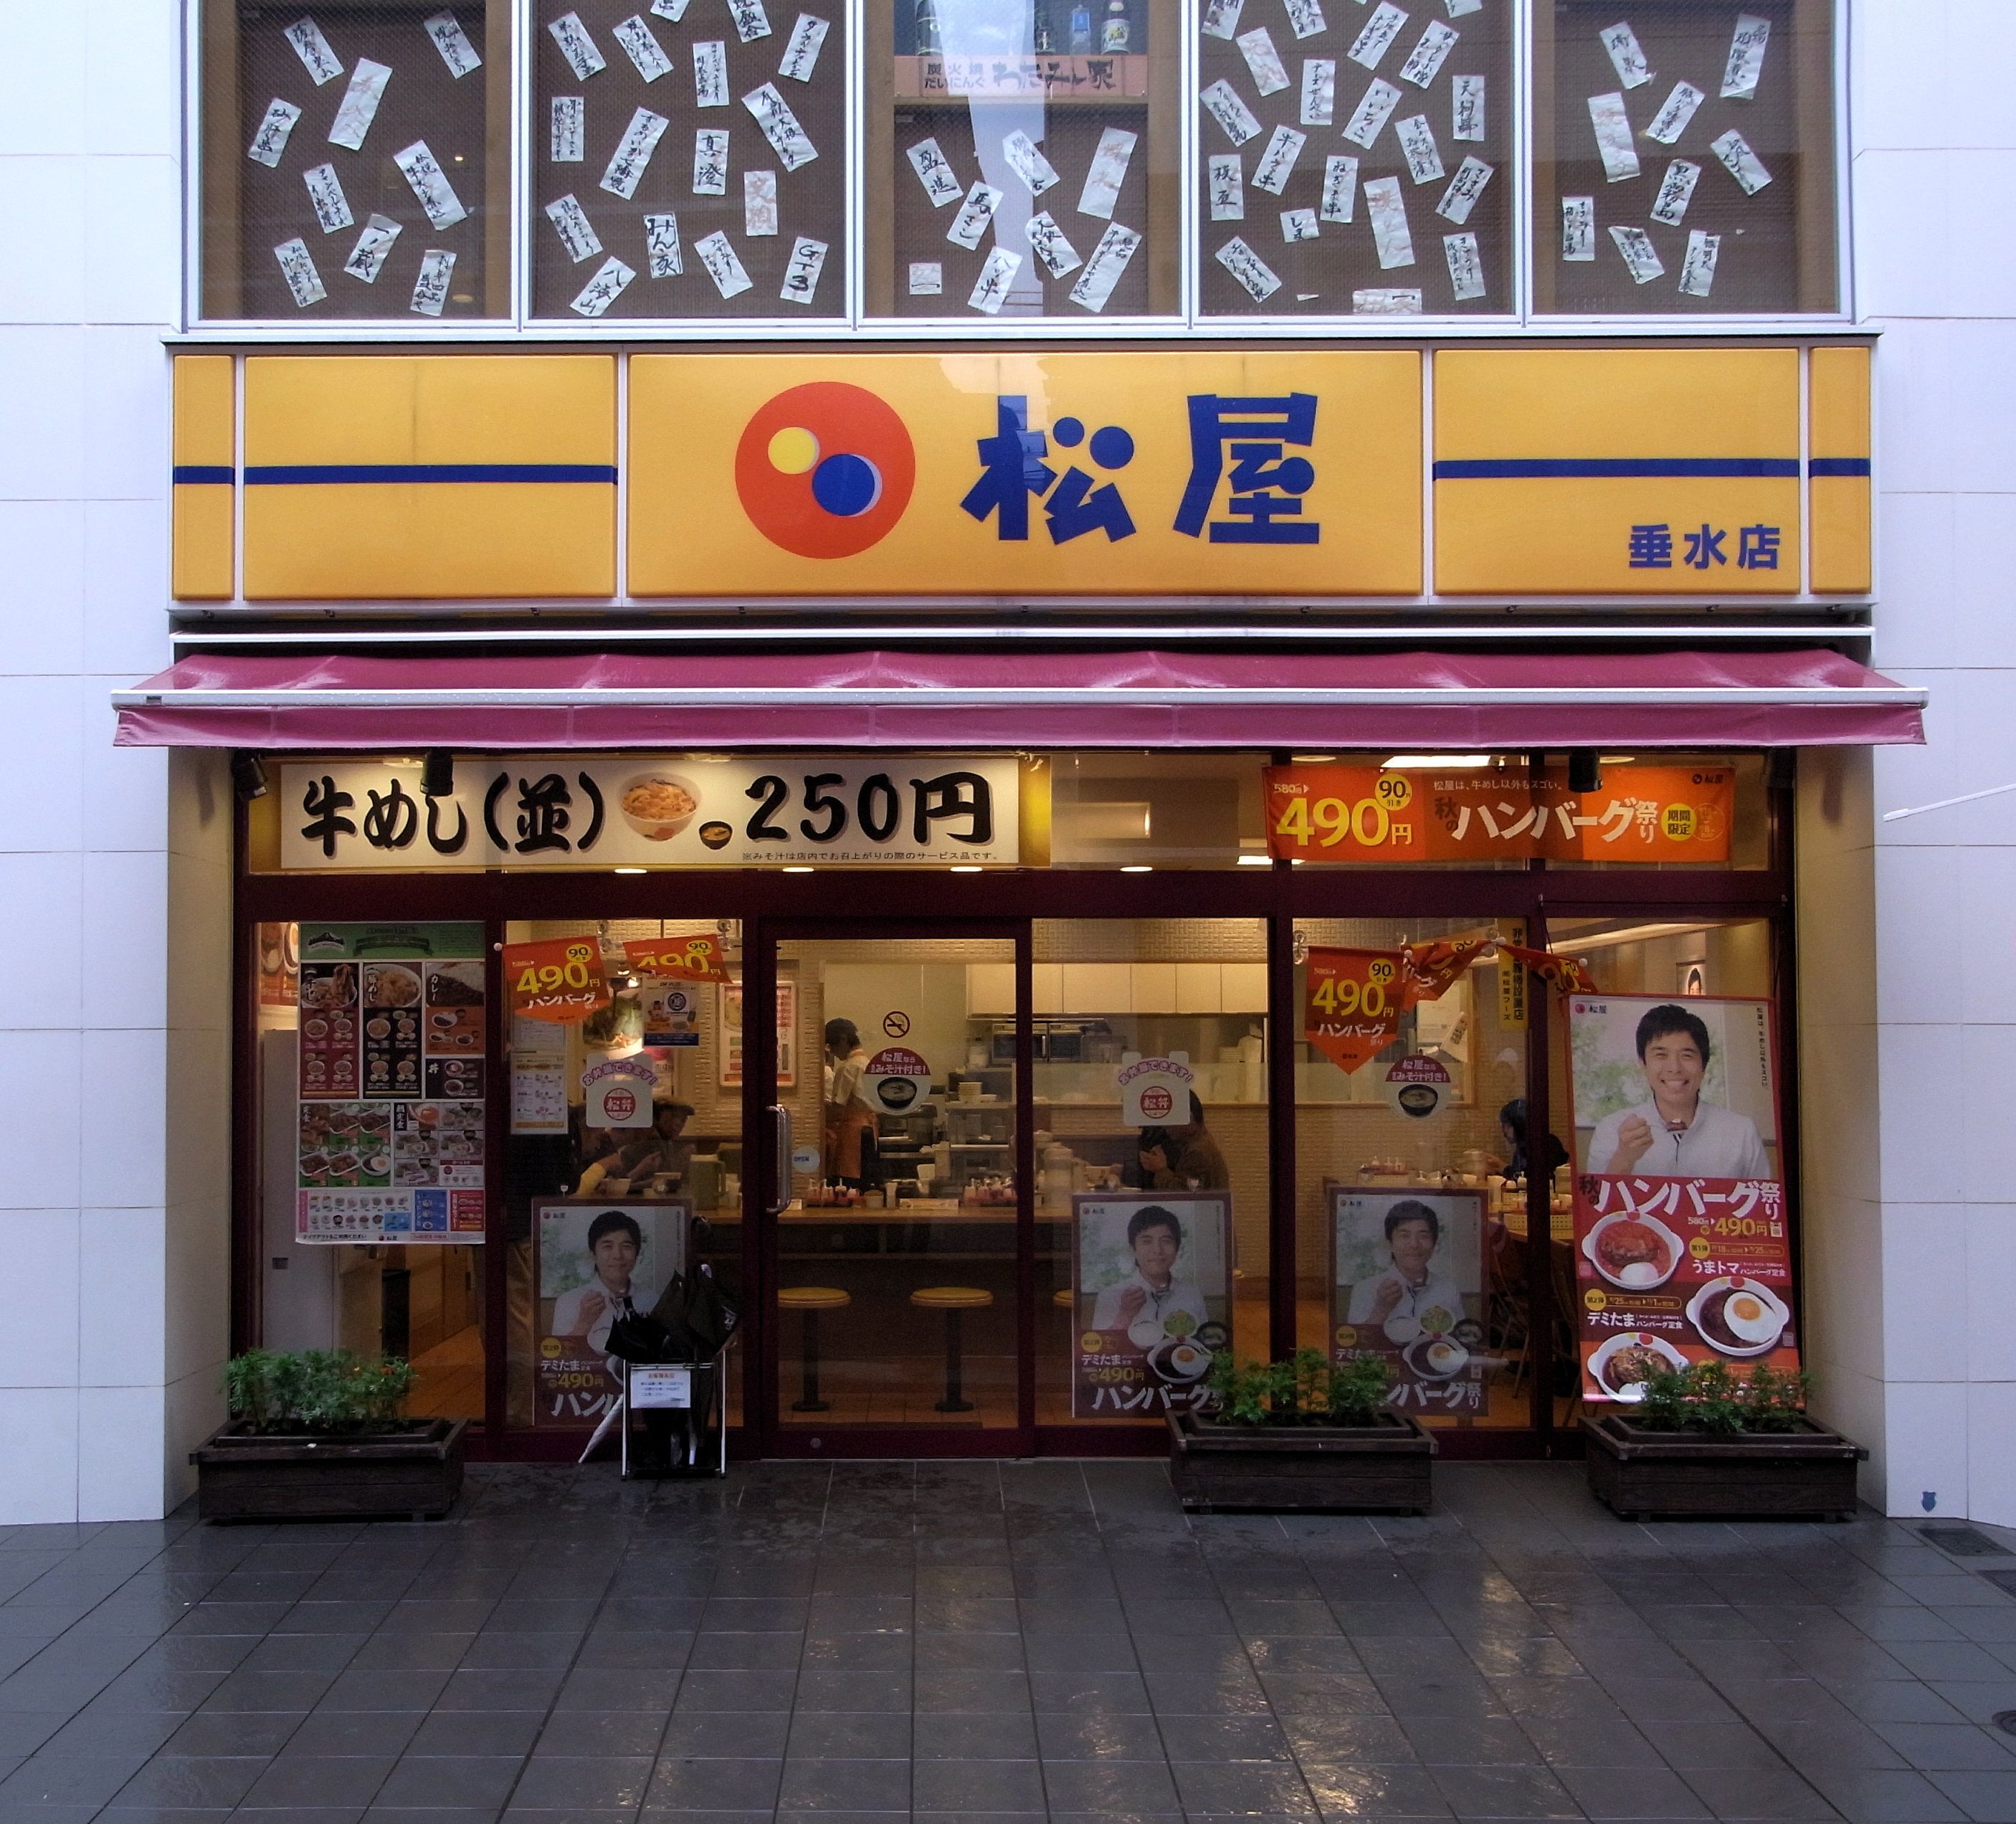 مطعم ماتسويا في اليابان